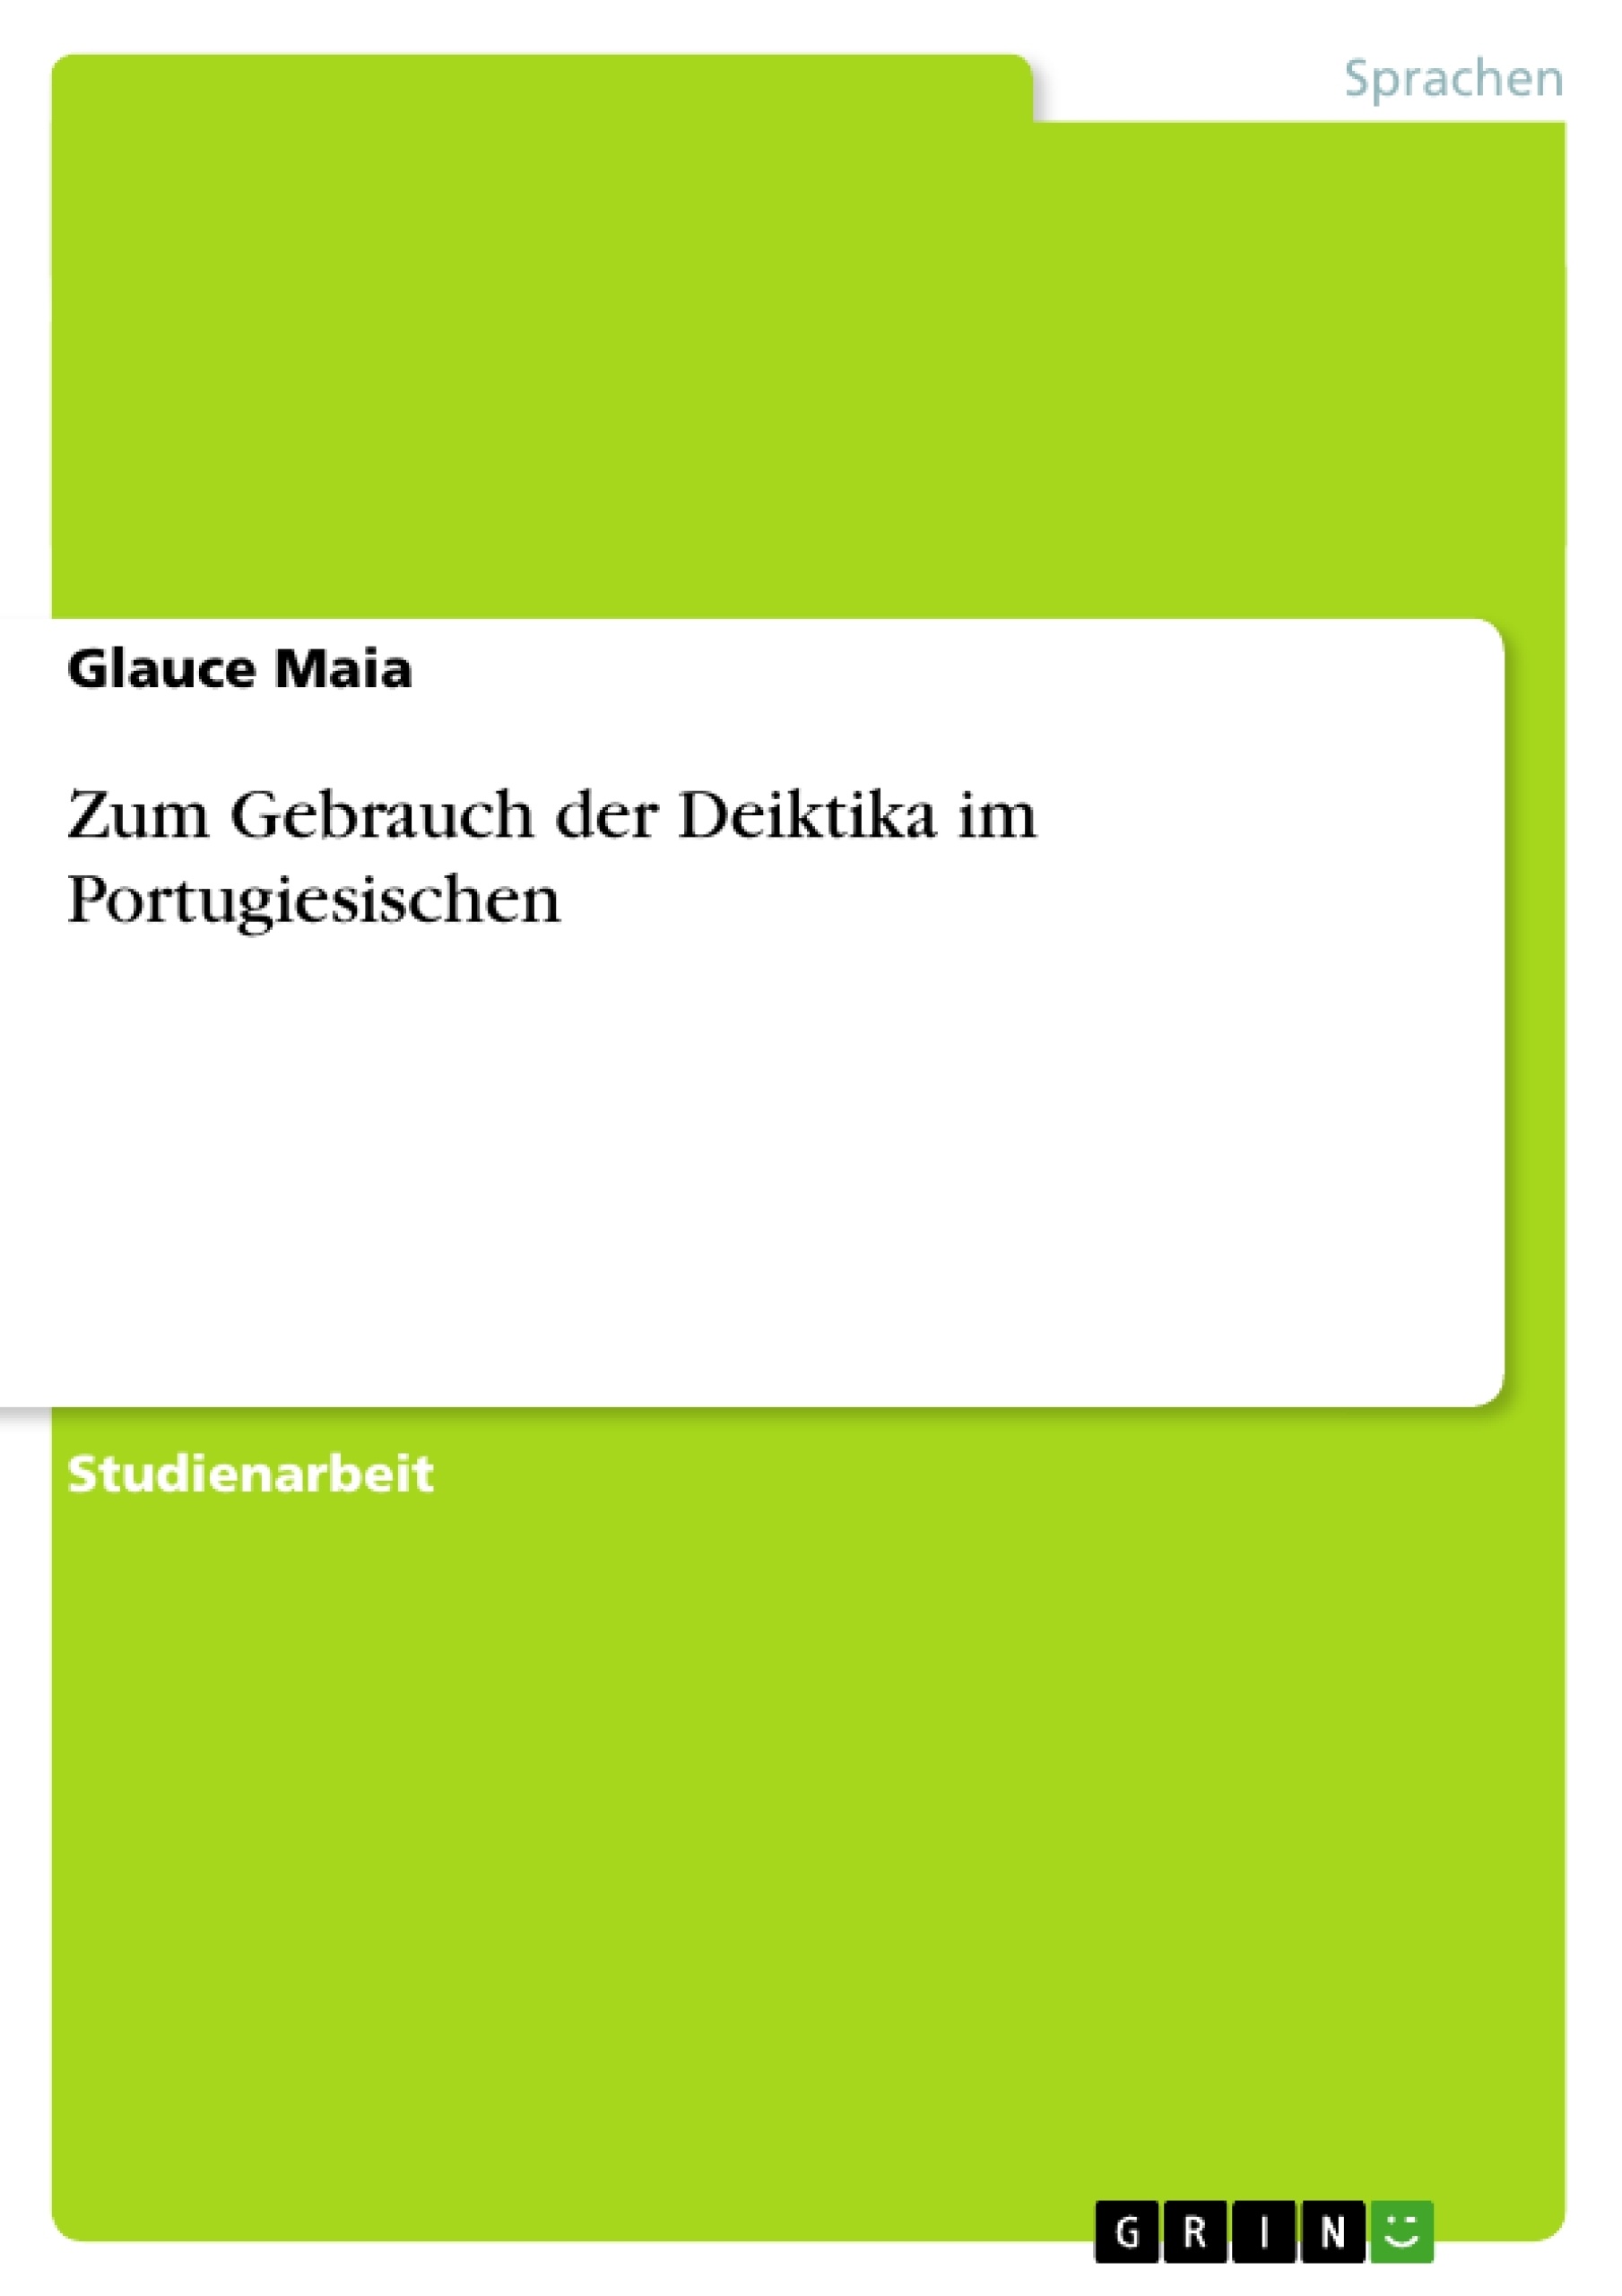 Titre: Zum Gebrauch der Deiktika im Portugiesischen